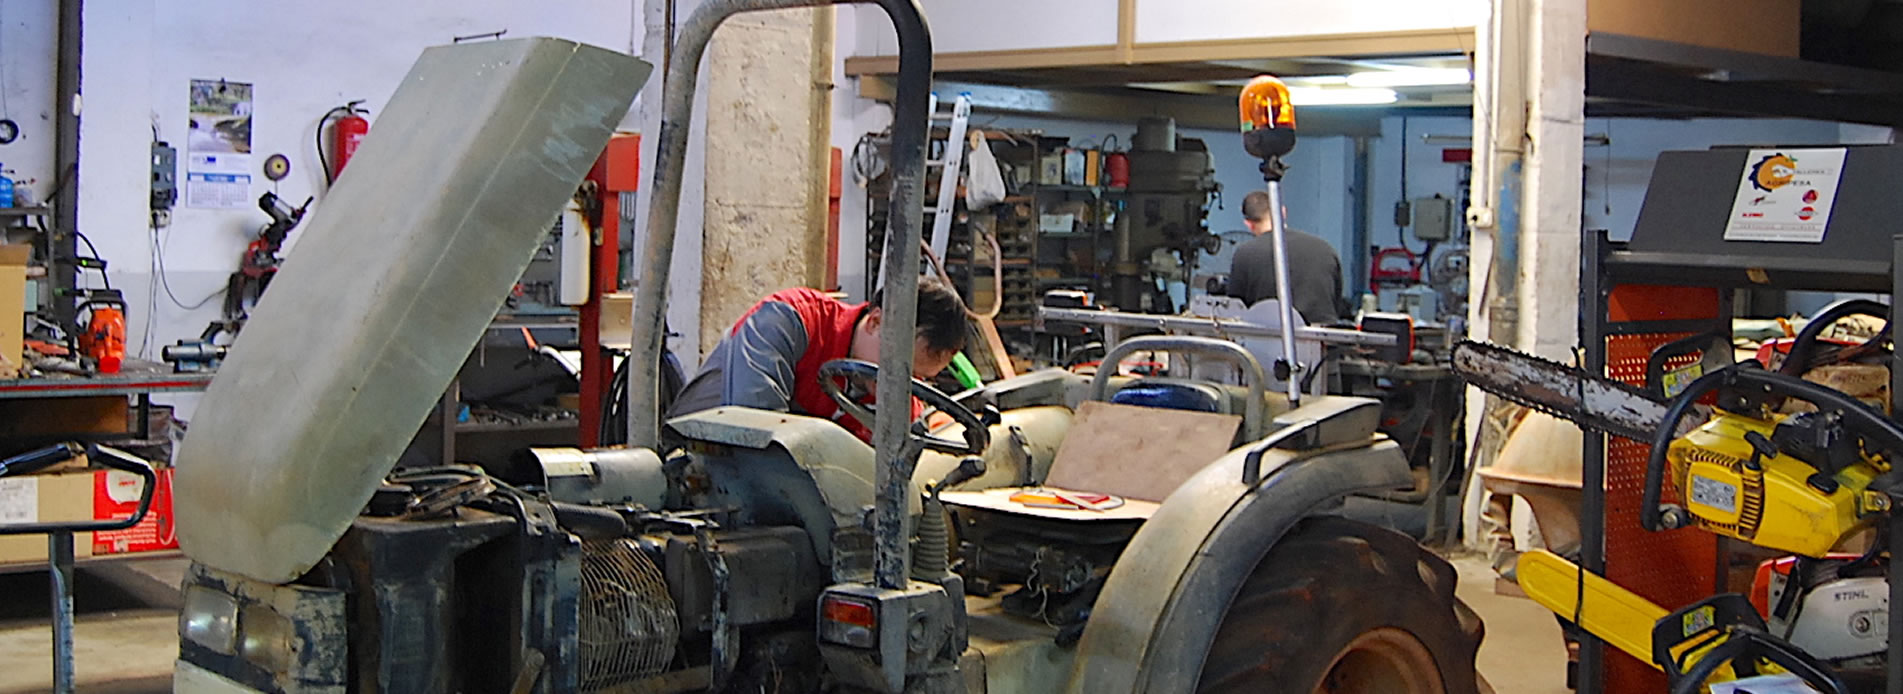 Taller de reparación de maquinaría agrícola en Vila-real